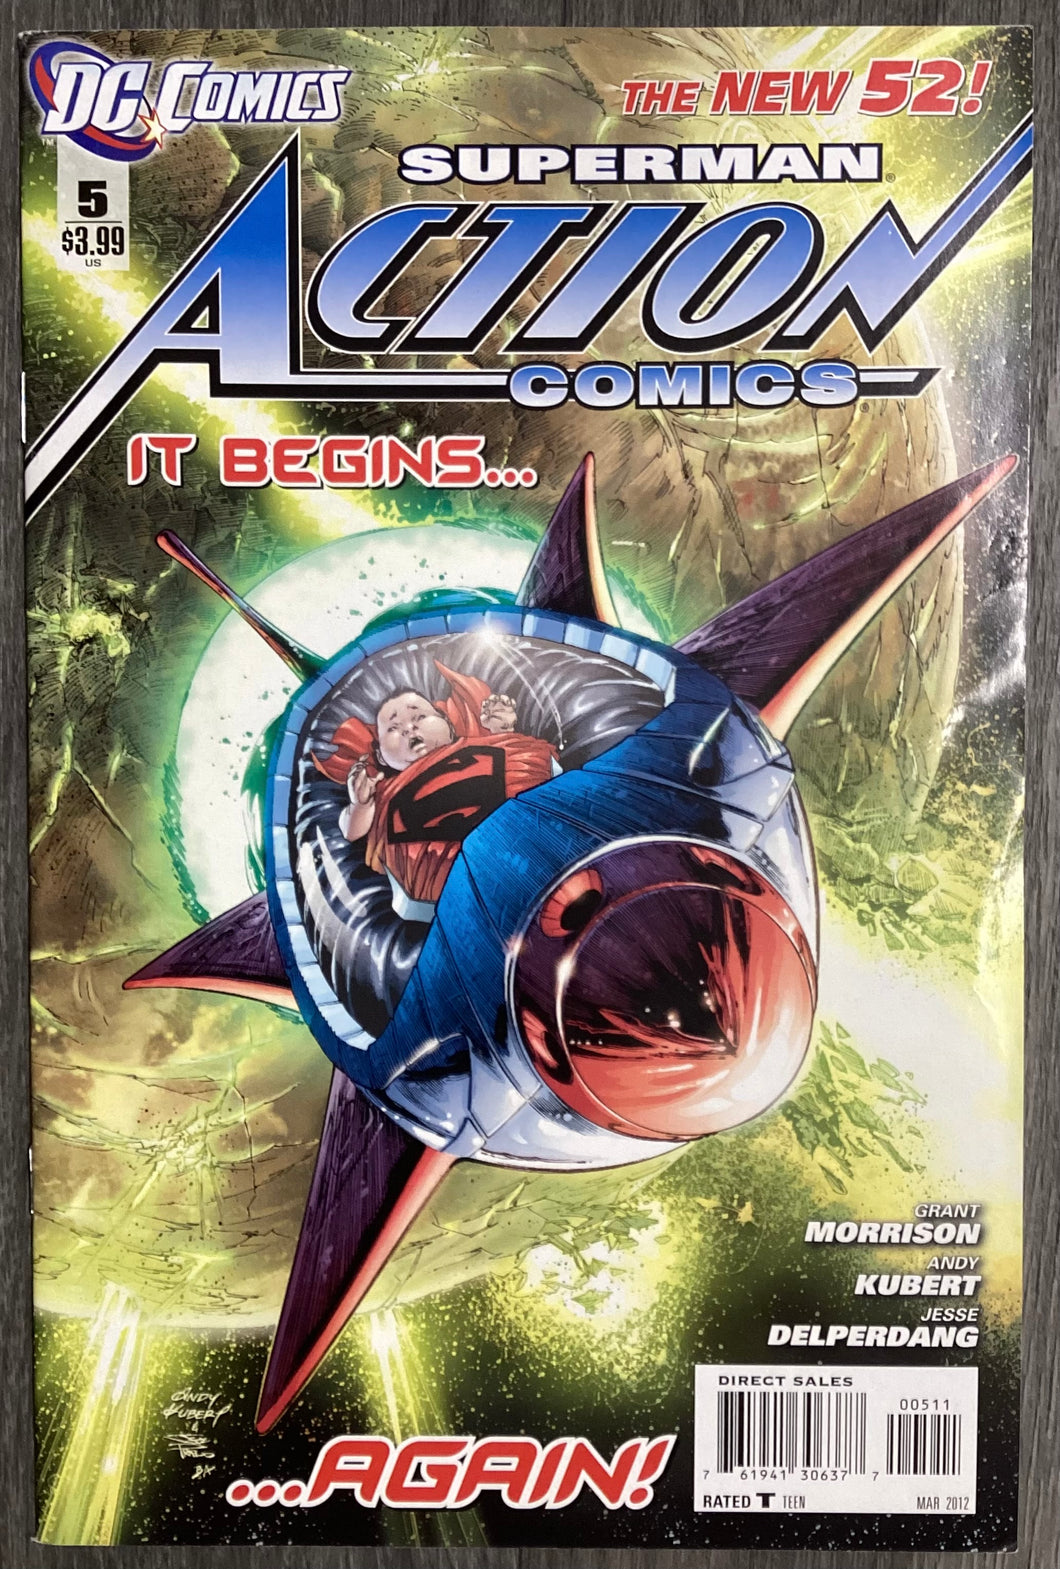 Action Comics (New 52) No. #5 2012 DC Comics